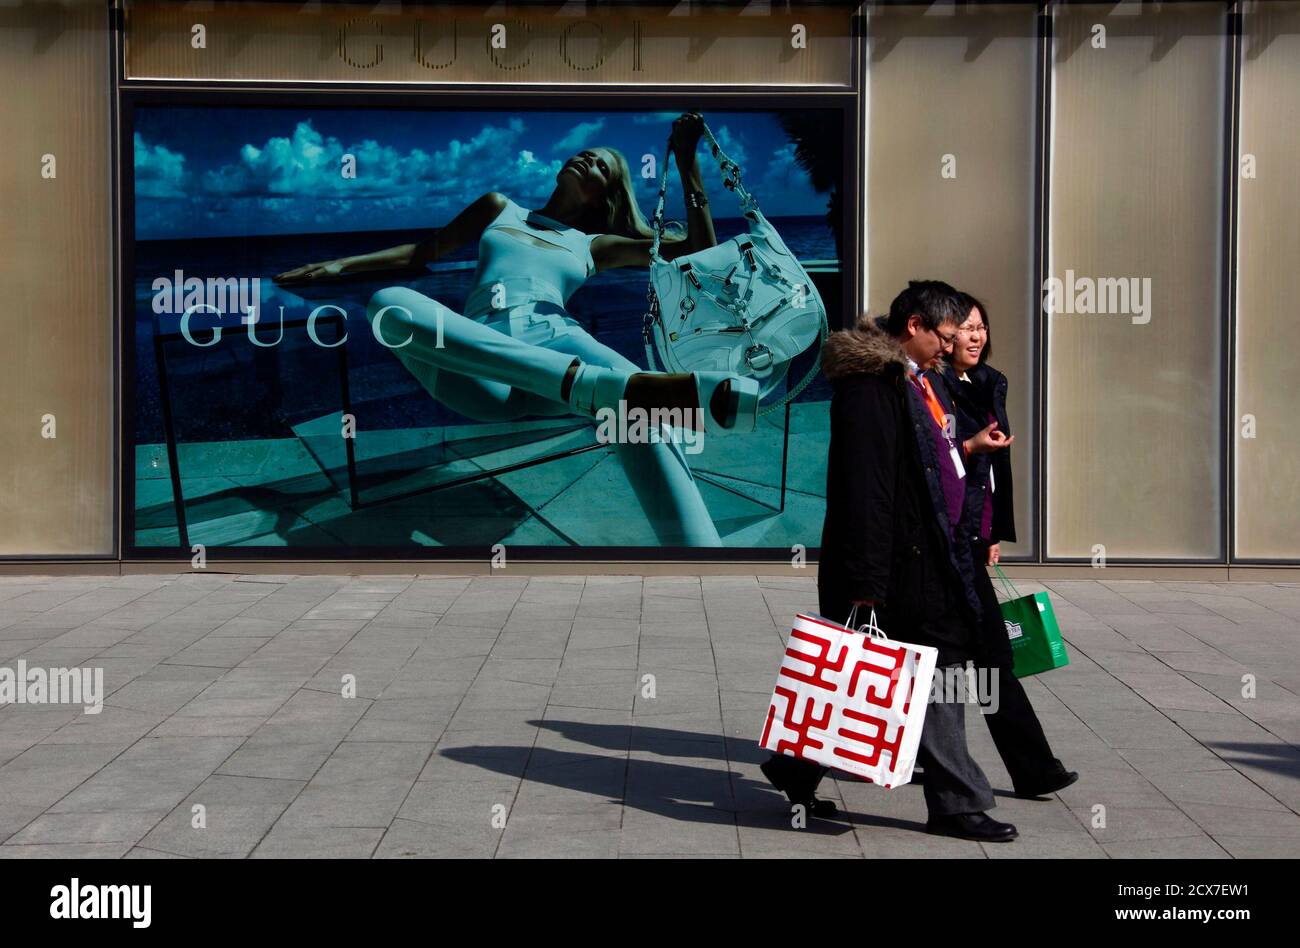 7. Dezember 2010 vorbeigehen Shopper ein Plakat für das Modelabel Gucci im  Zentrum Pekings. Geschäftliche Stimmung an der asiatischen Spitze, dass  Unternehmen im vierten Quartal als Kapitalgesellschaften erholte sich  abgetan Bedenken, dass